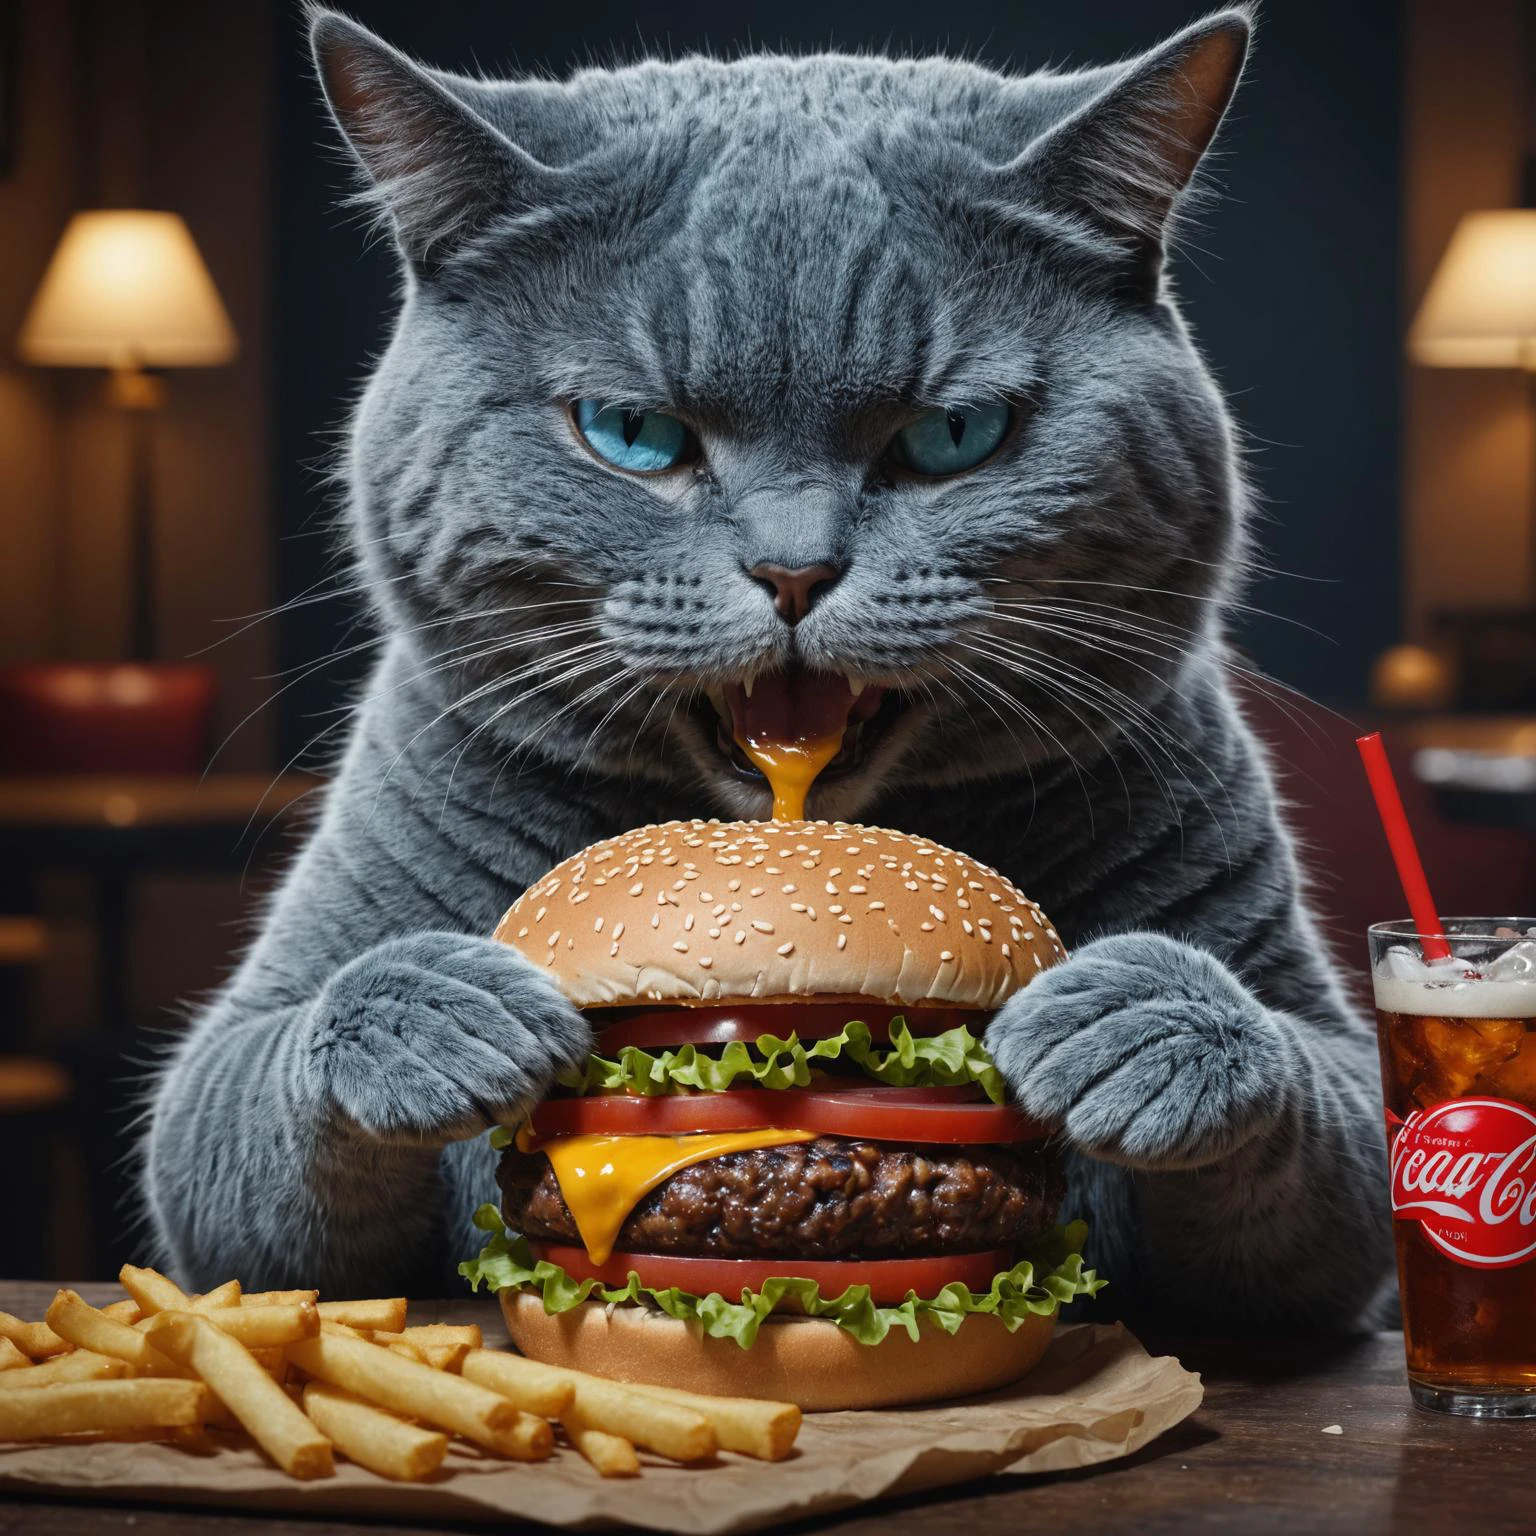 蓝猫吃汉堡喝可乐, RAW 照片, 最好的质量, 超现实主义, 极其详细, 小插图, 非常详细, 高预算, 喜怒无常, 史诗, 华丽的, 胶片颗粒